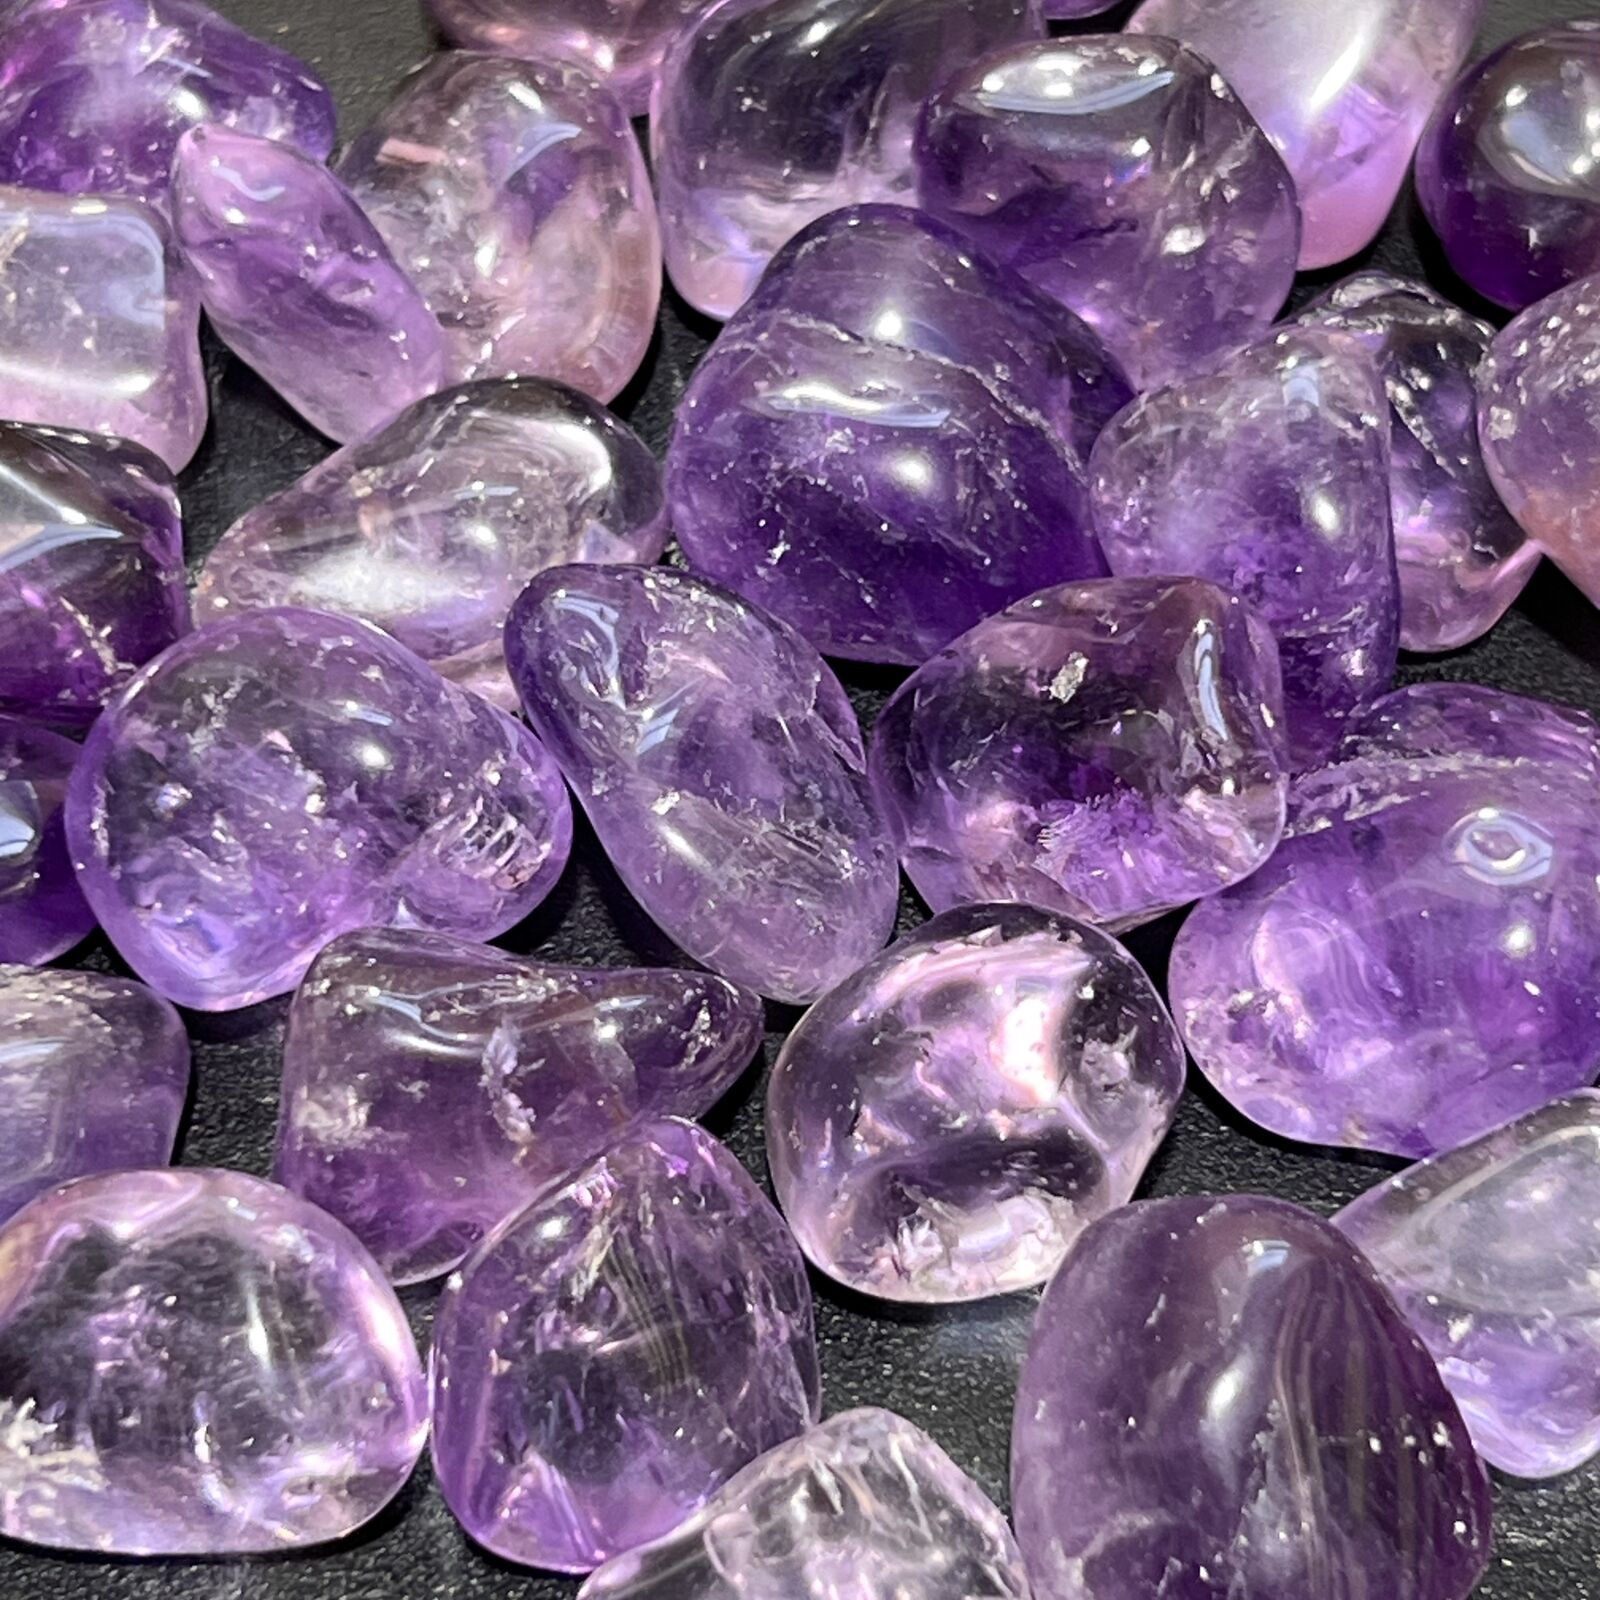 Amethyst Crystal Tumbled (1 LB) One Pound Bulk Wholesale Lot Polished Gemstones